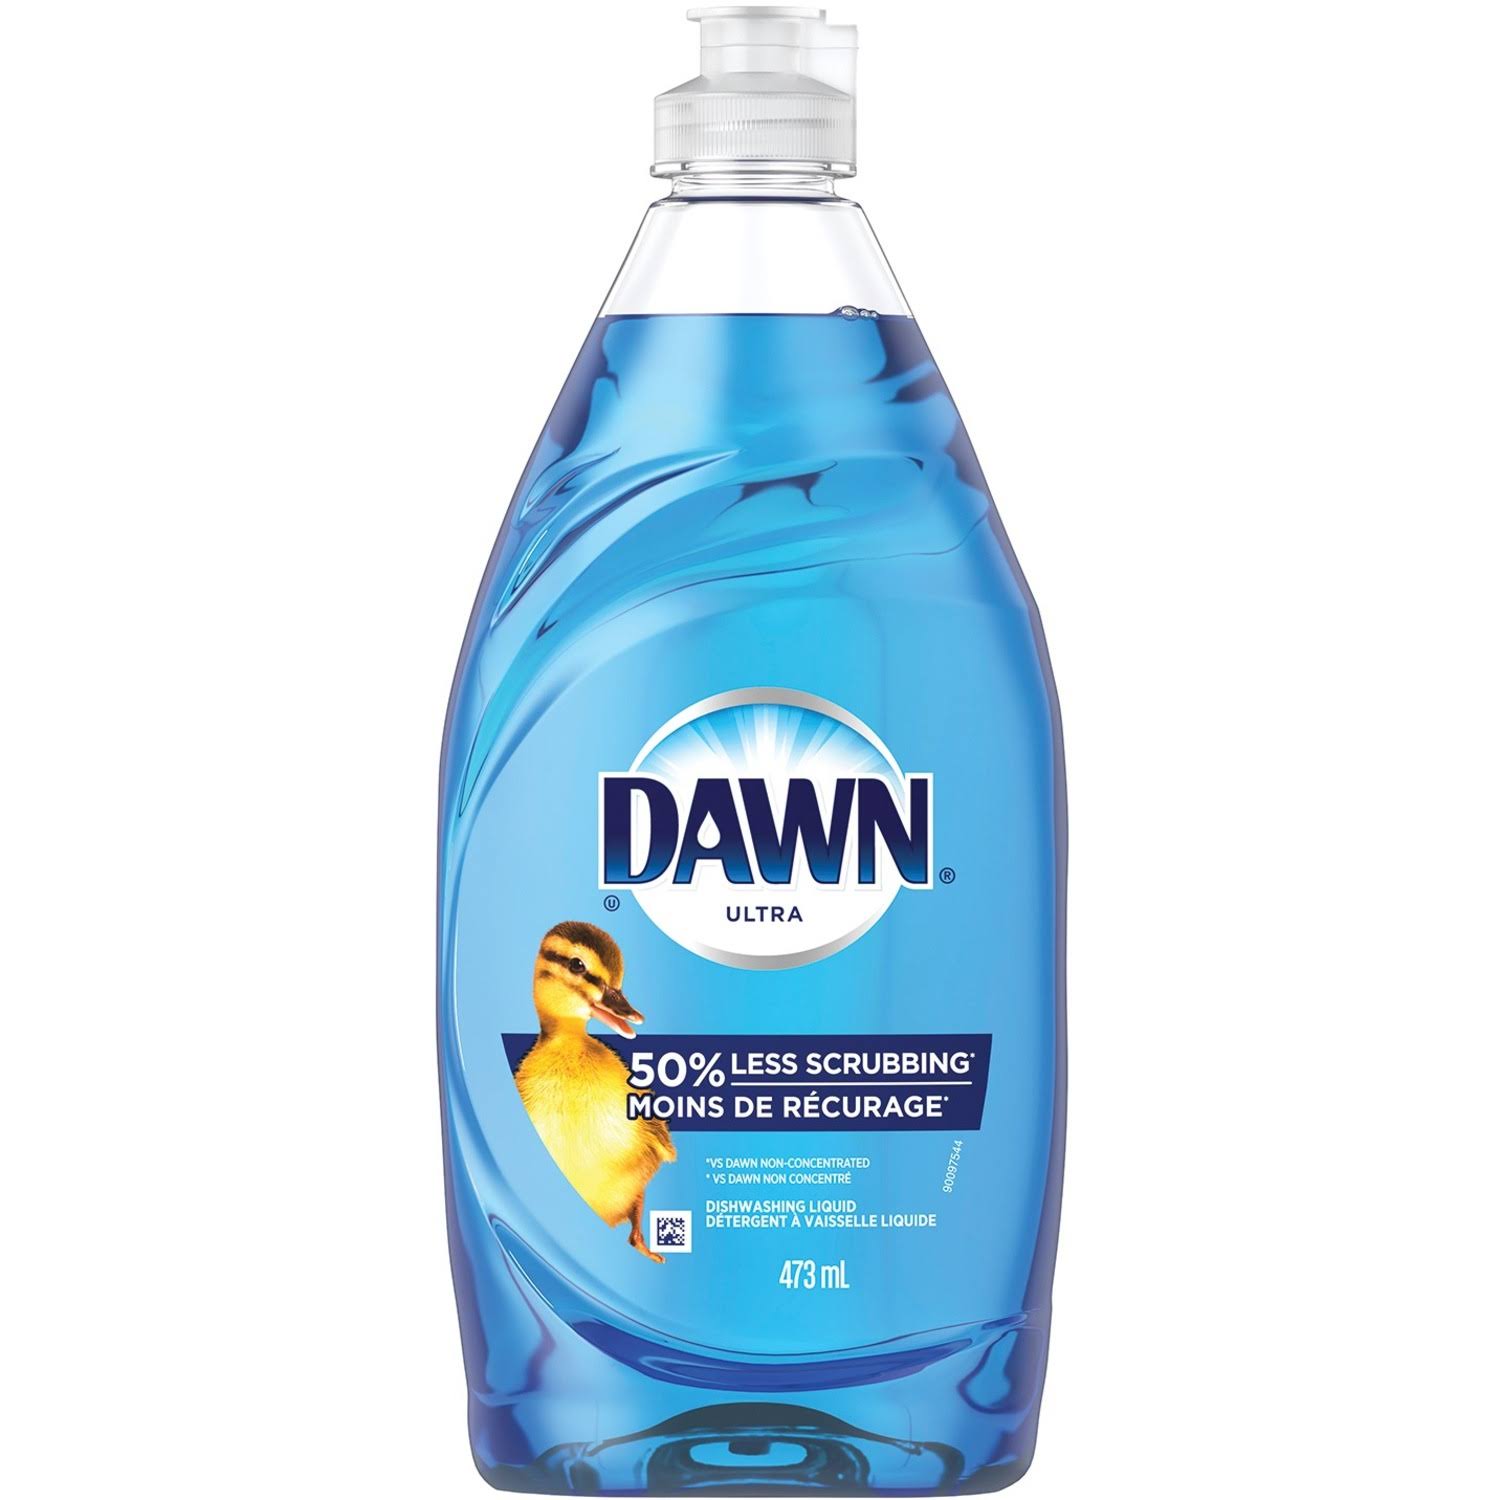 Dawn Ultra Dishwashing Liquid Soap - 16 fl oz